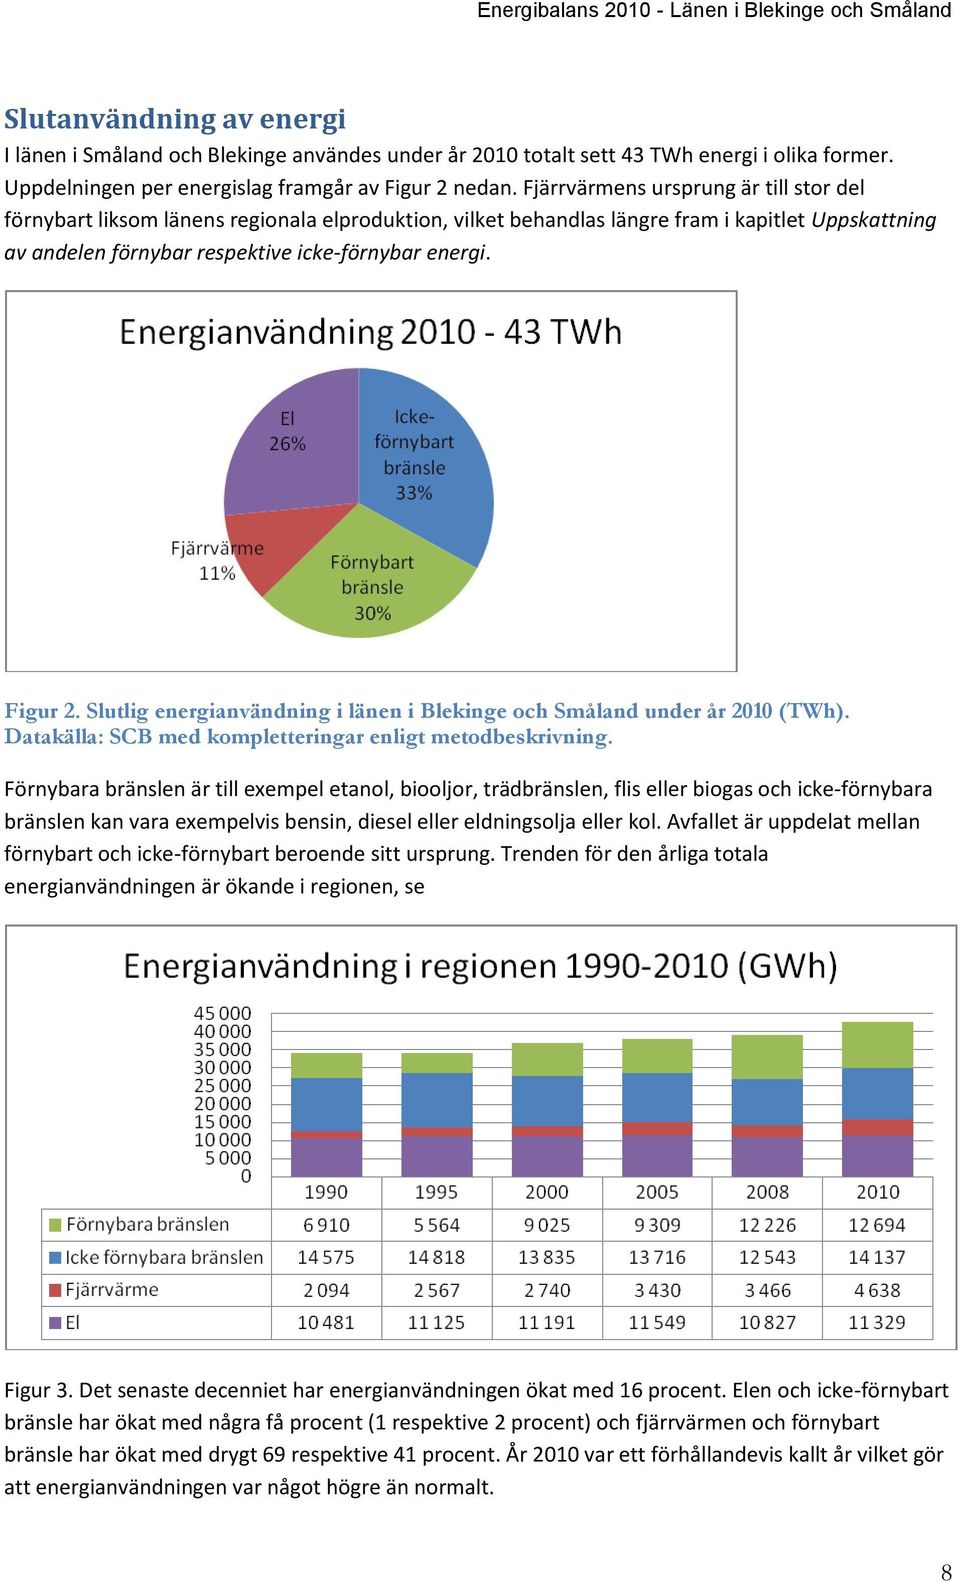 Figur 2. Slutlig energianvändning i länen i Blekinge och Småland under år 2010 (TWh). Datakälla: SCB med kompletteringar enligt metodbeskrivning.